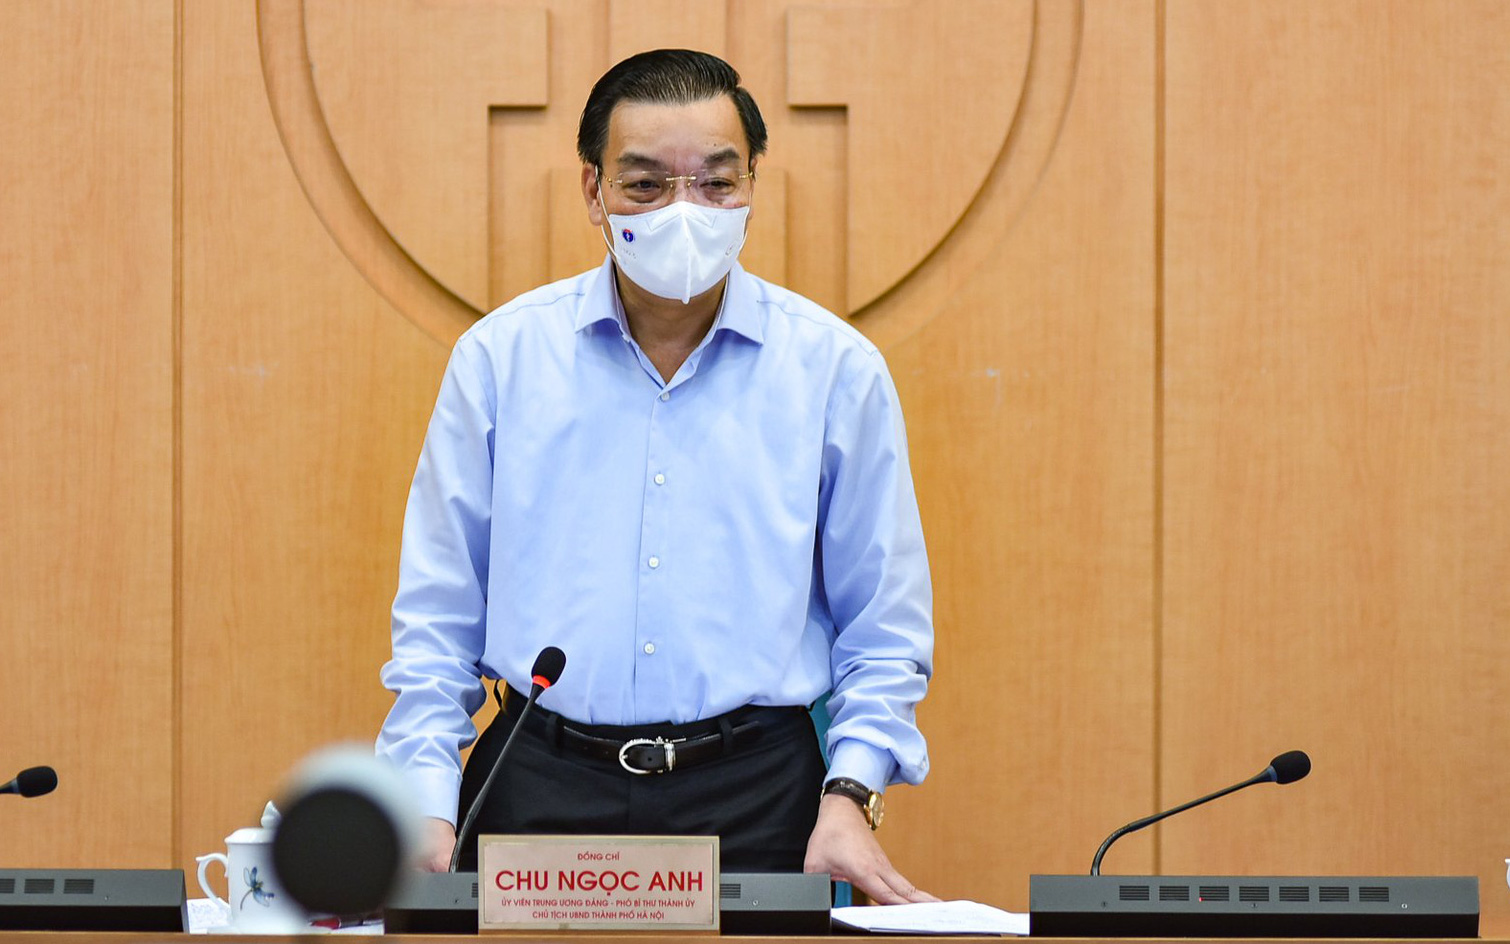 Chủ tịch Hà Nội kêu gọi người dân khai báo y tế thường xuyên, đặc biệt là những trường hợp ho sốt, khó thở